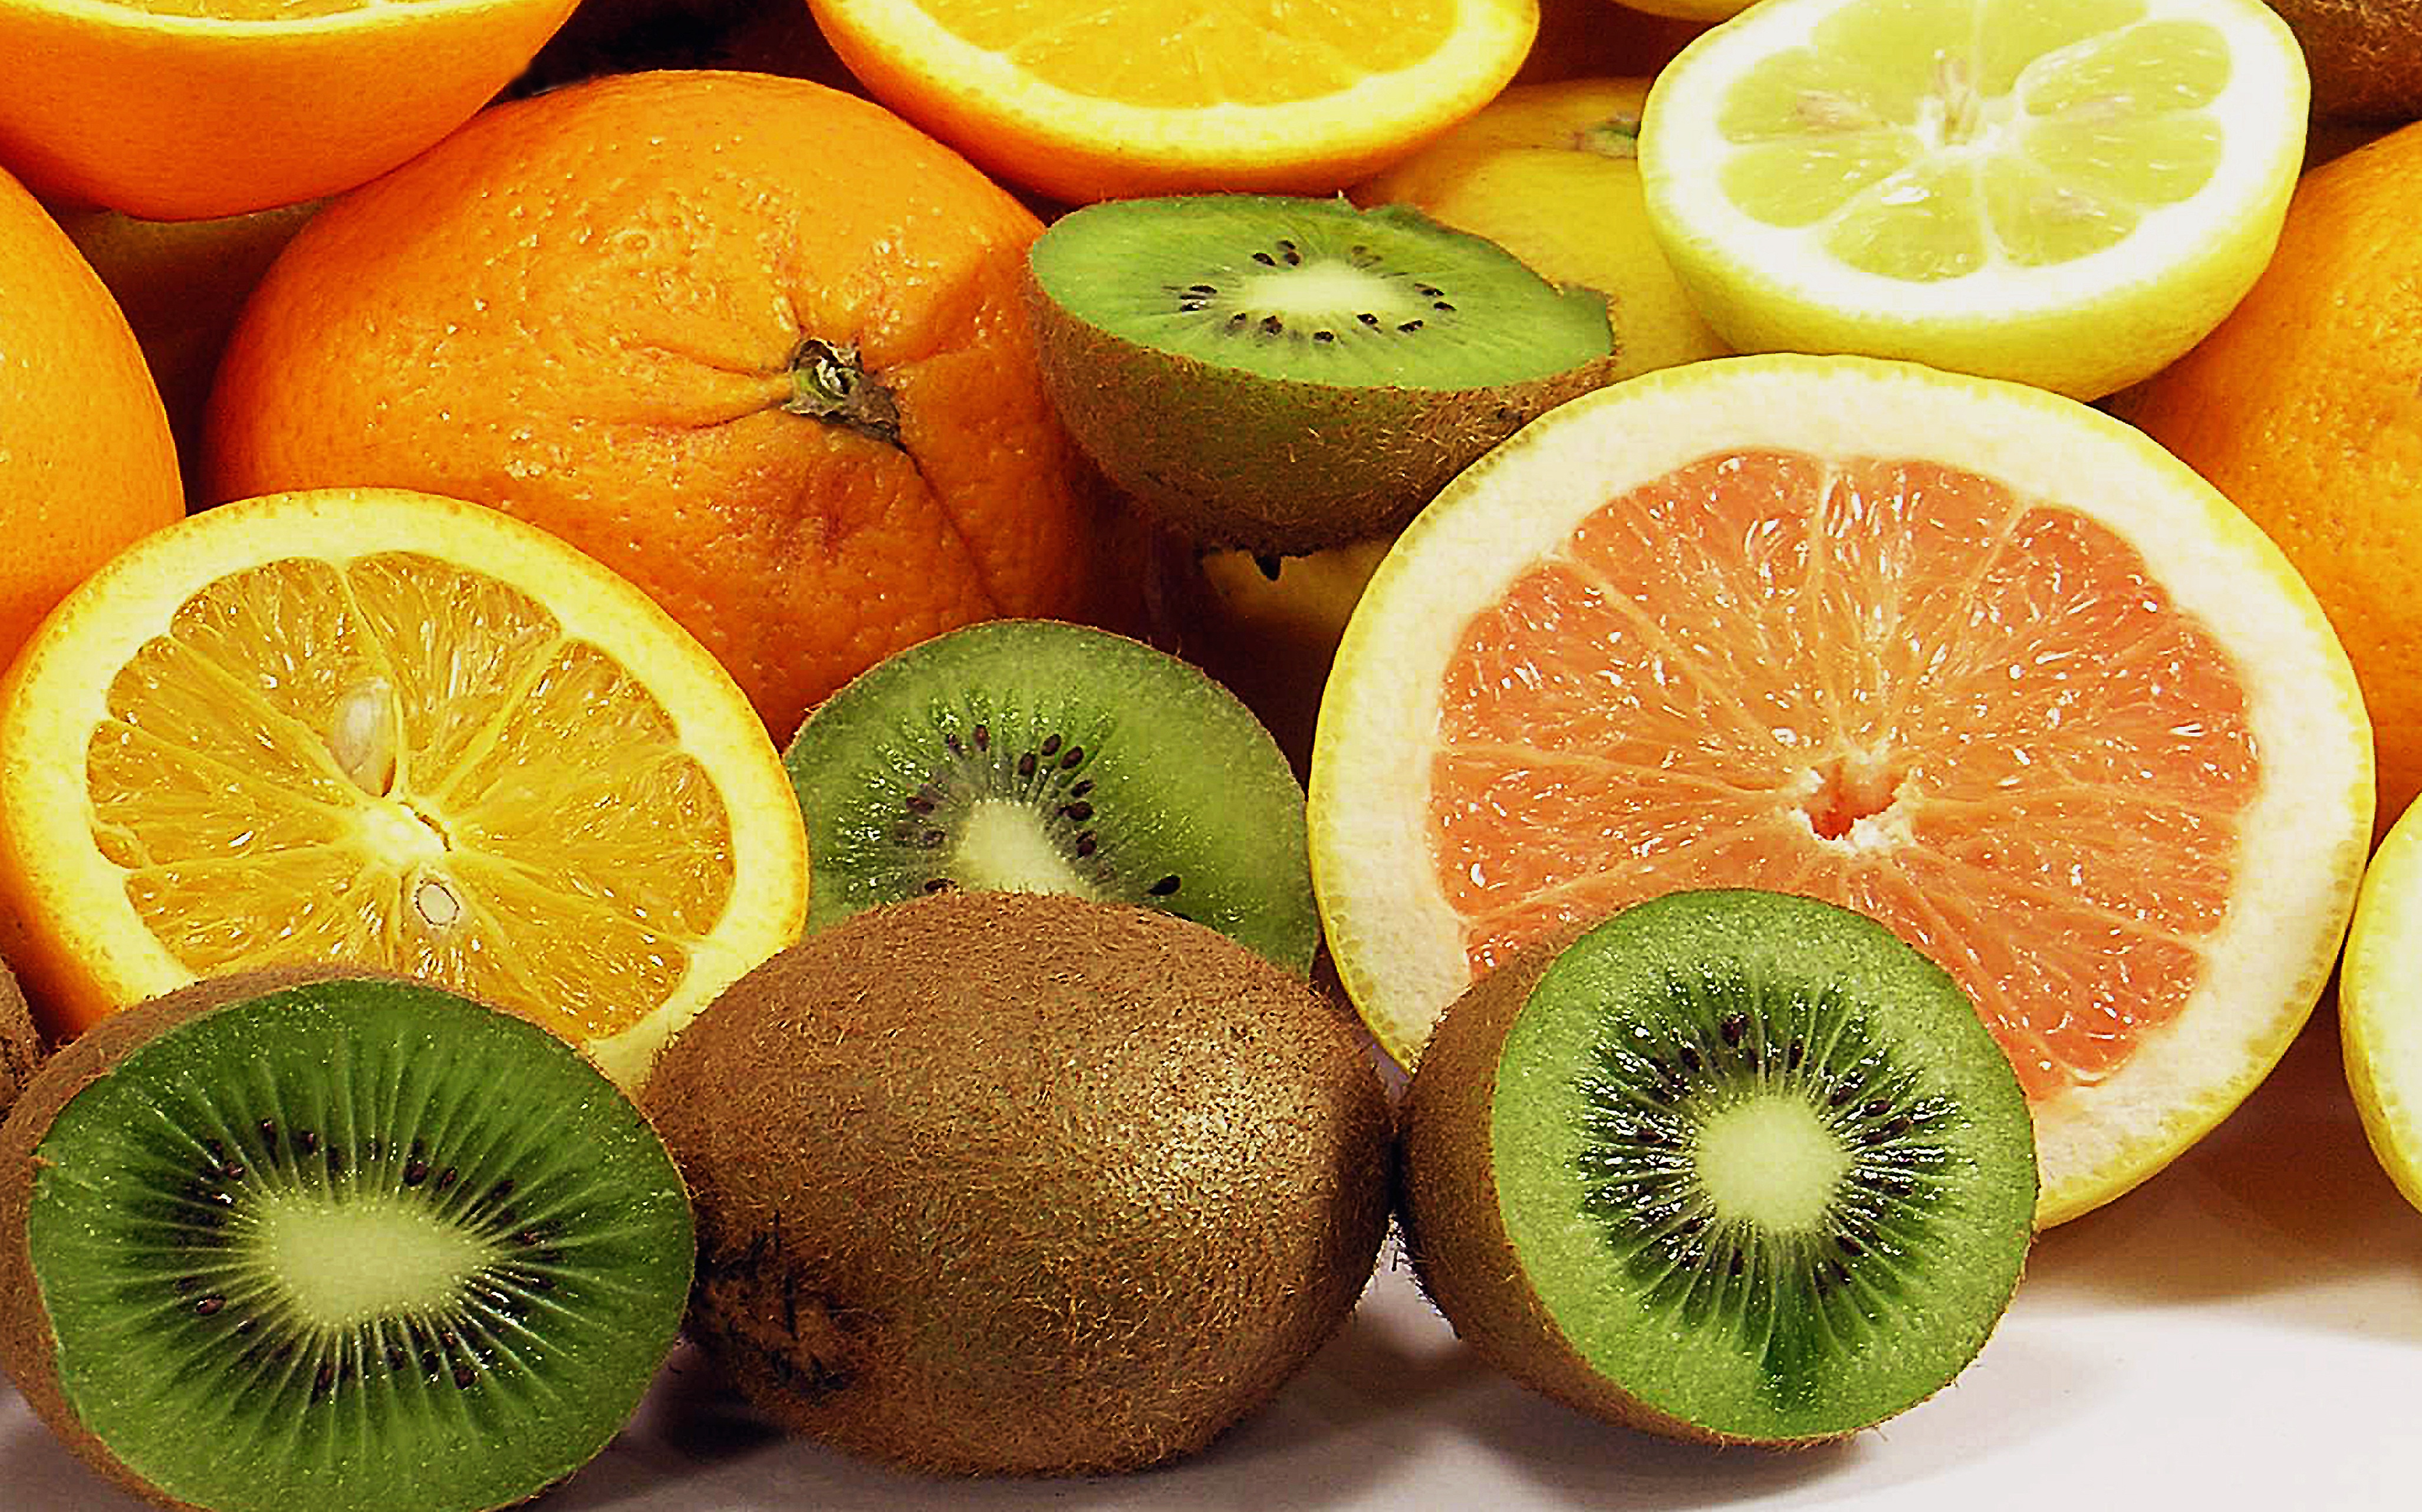 Фото природа, растение, фрукты, оранжевый, еда, продукт, лимон, сок, киви, тропический фрукт, поедание, апельсины, цитрусовые, свежесть, цветущее растение - бесплатные картинки на Fonwall